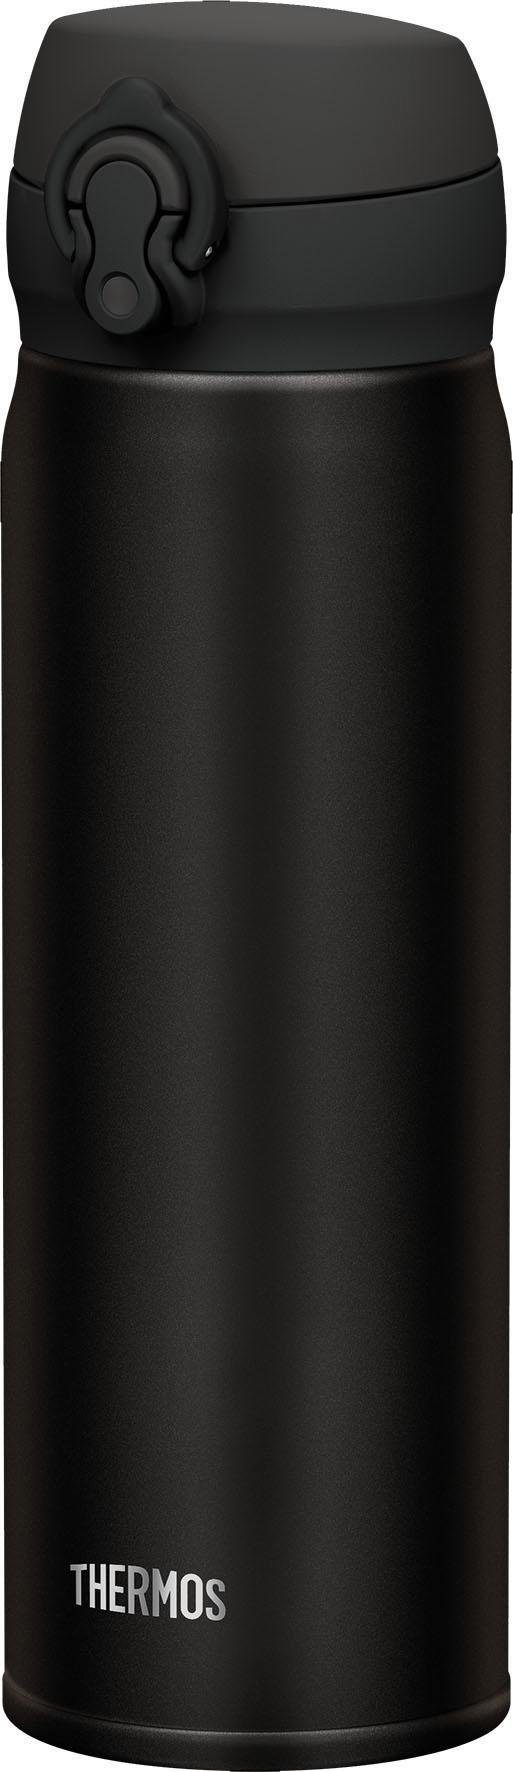 THERMOS Thermoflasche Ultralight black, ideal für den Alltag, aus Edelstahl